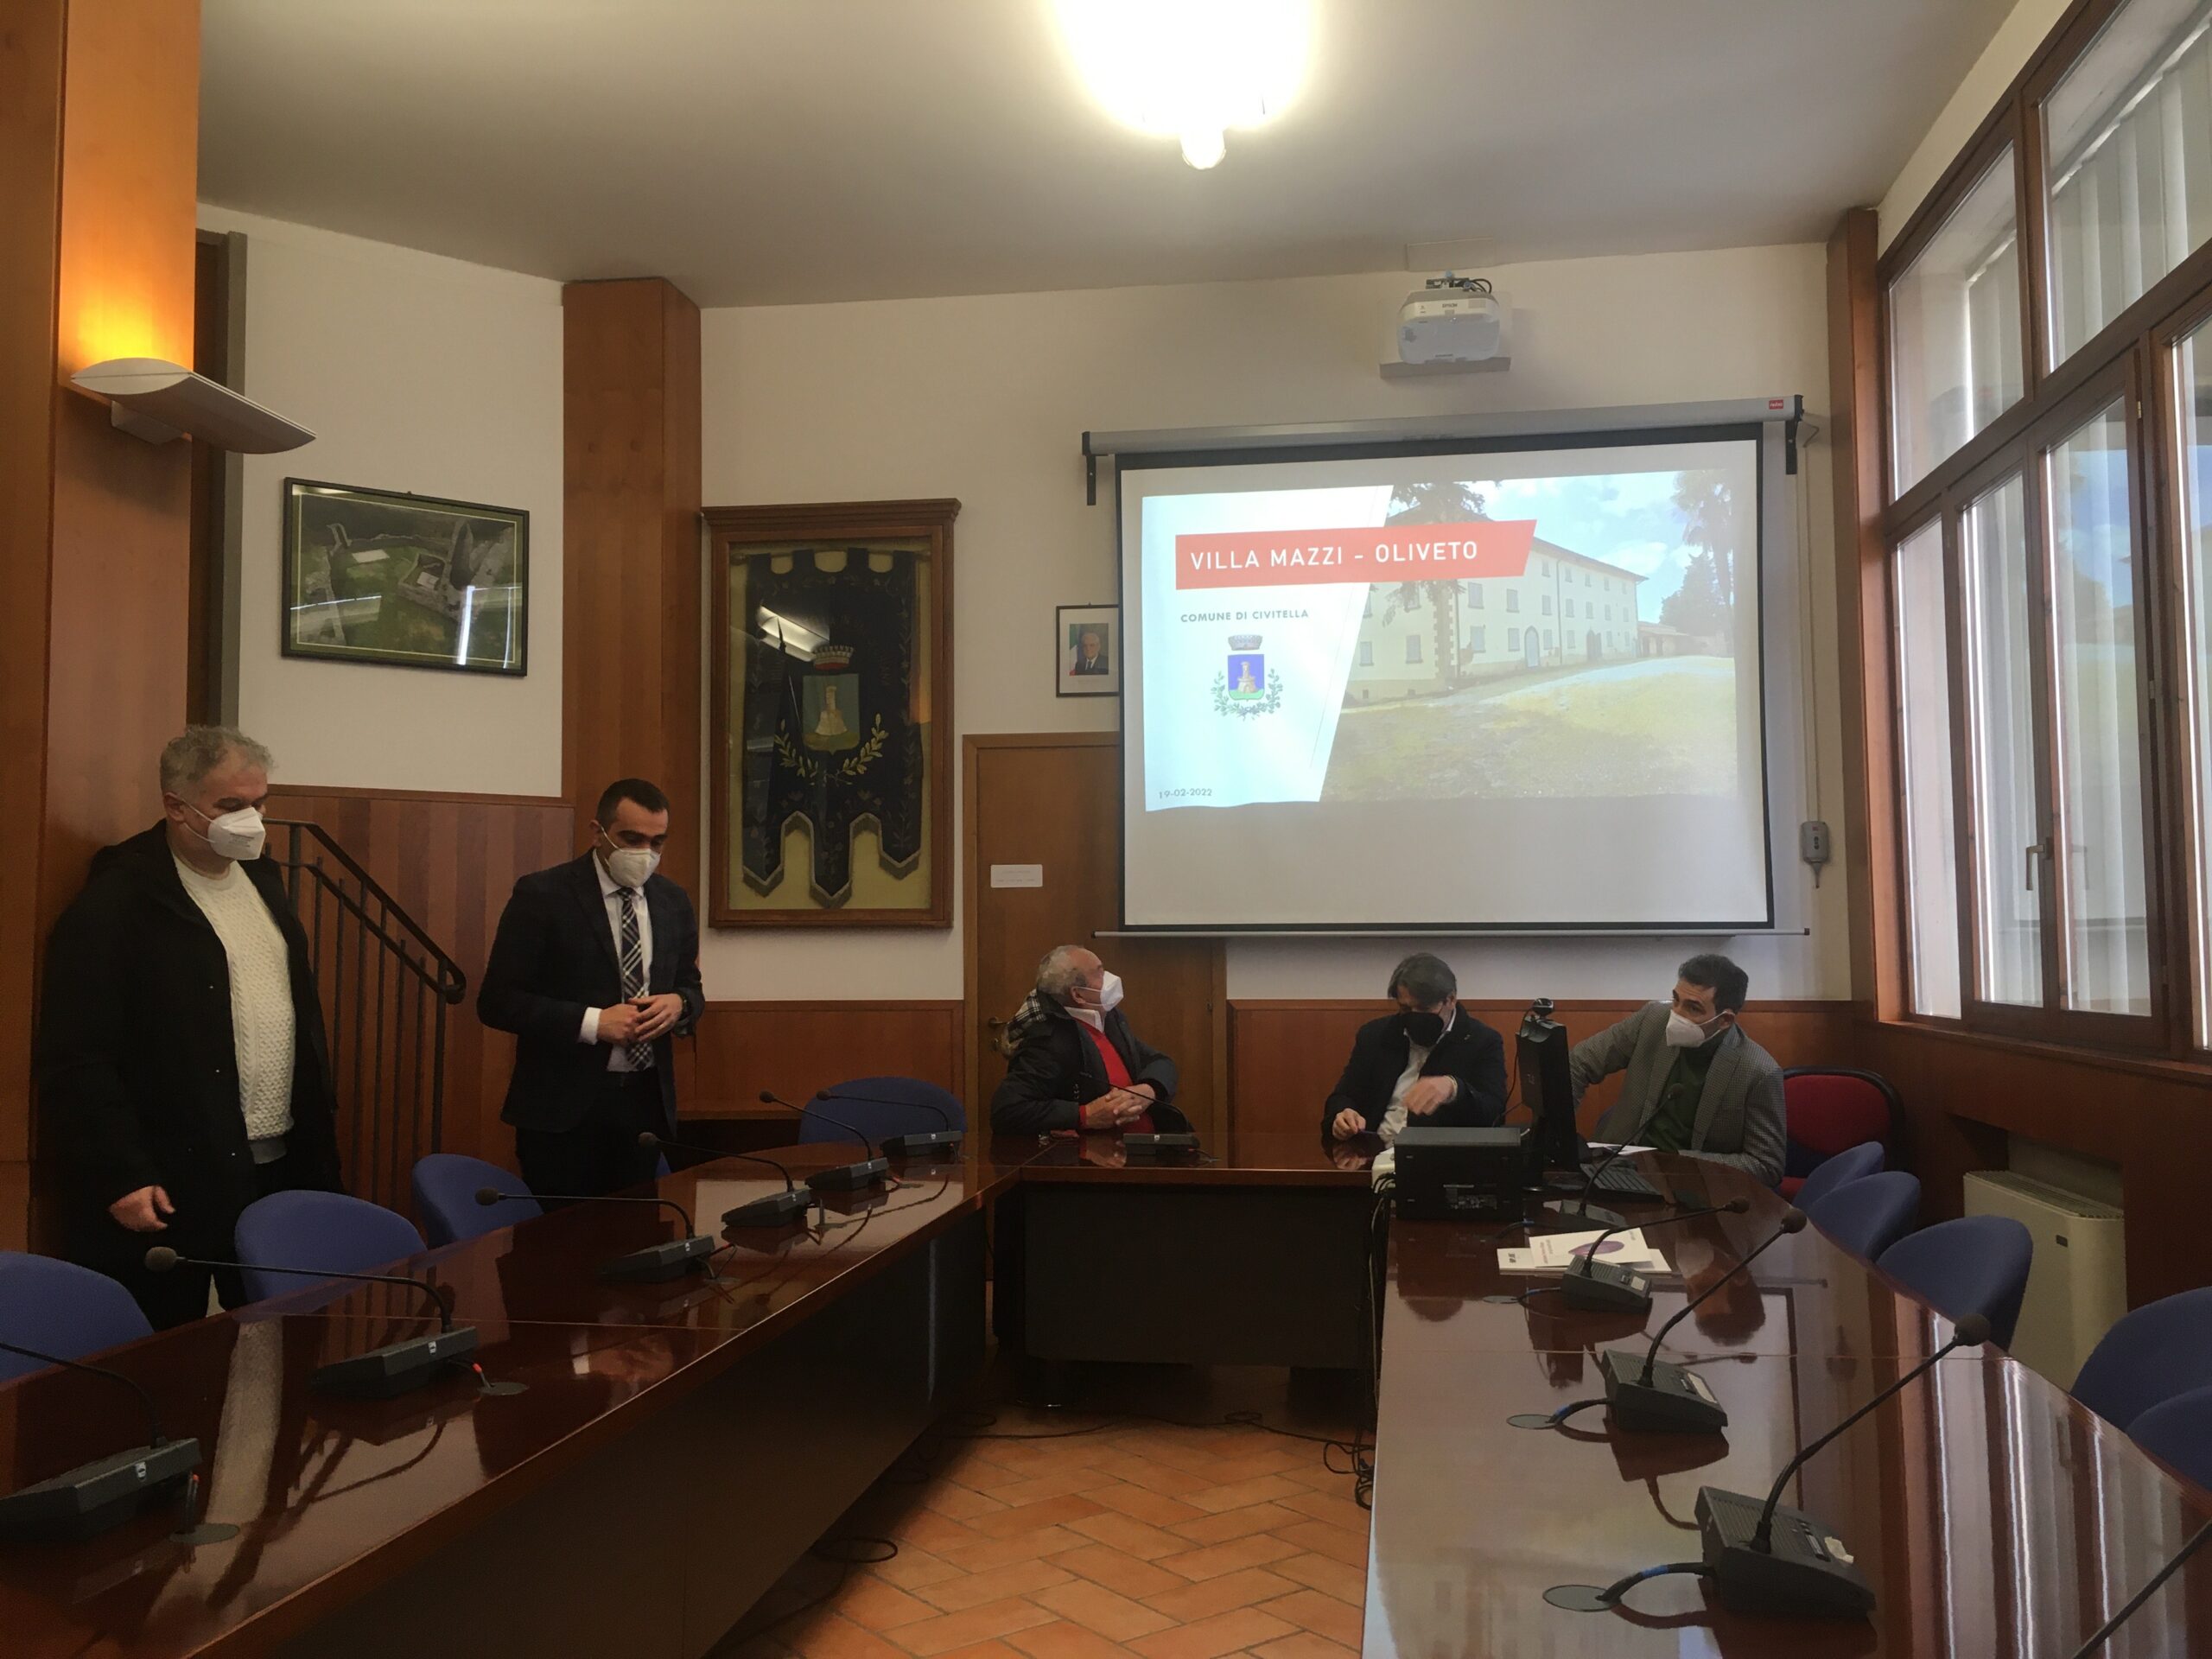 Presentato il progetto di ristrutturazione della Scuola dell’Infanzia “Lo Scoiattolo” e riqualificazione di Villa Mazzi a Oliveto